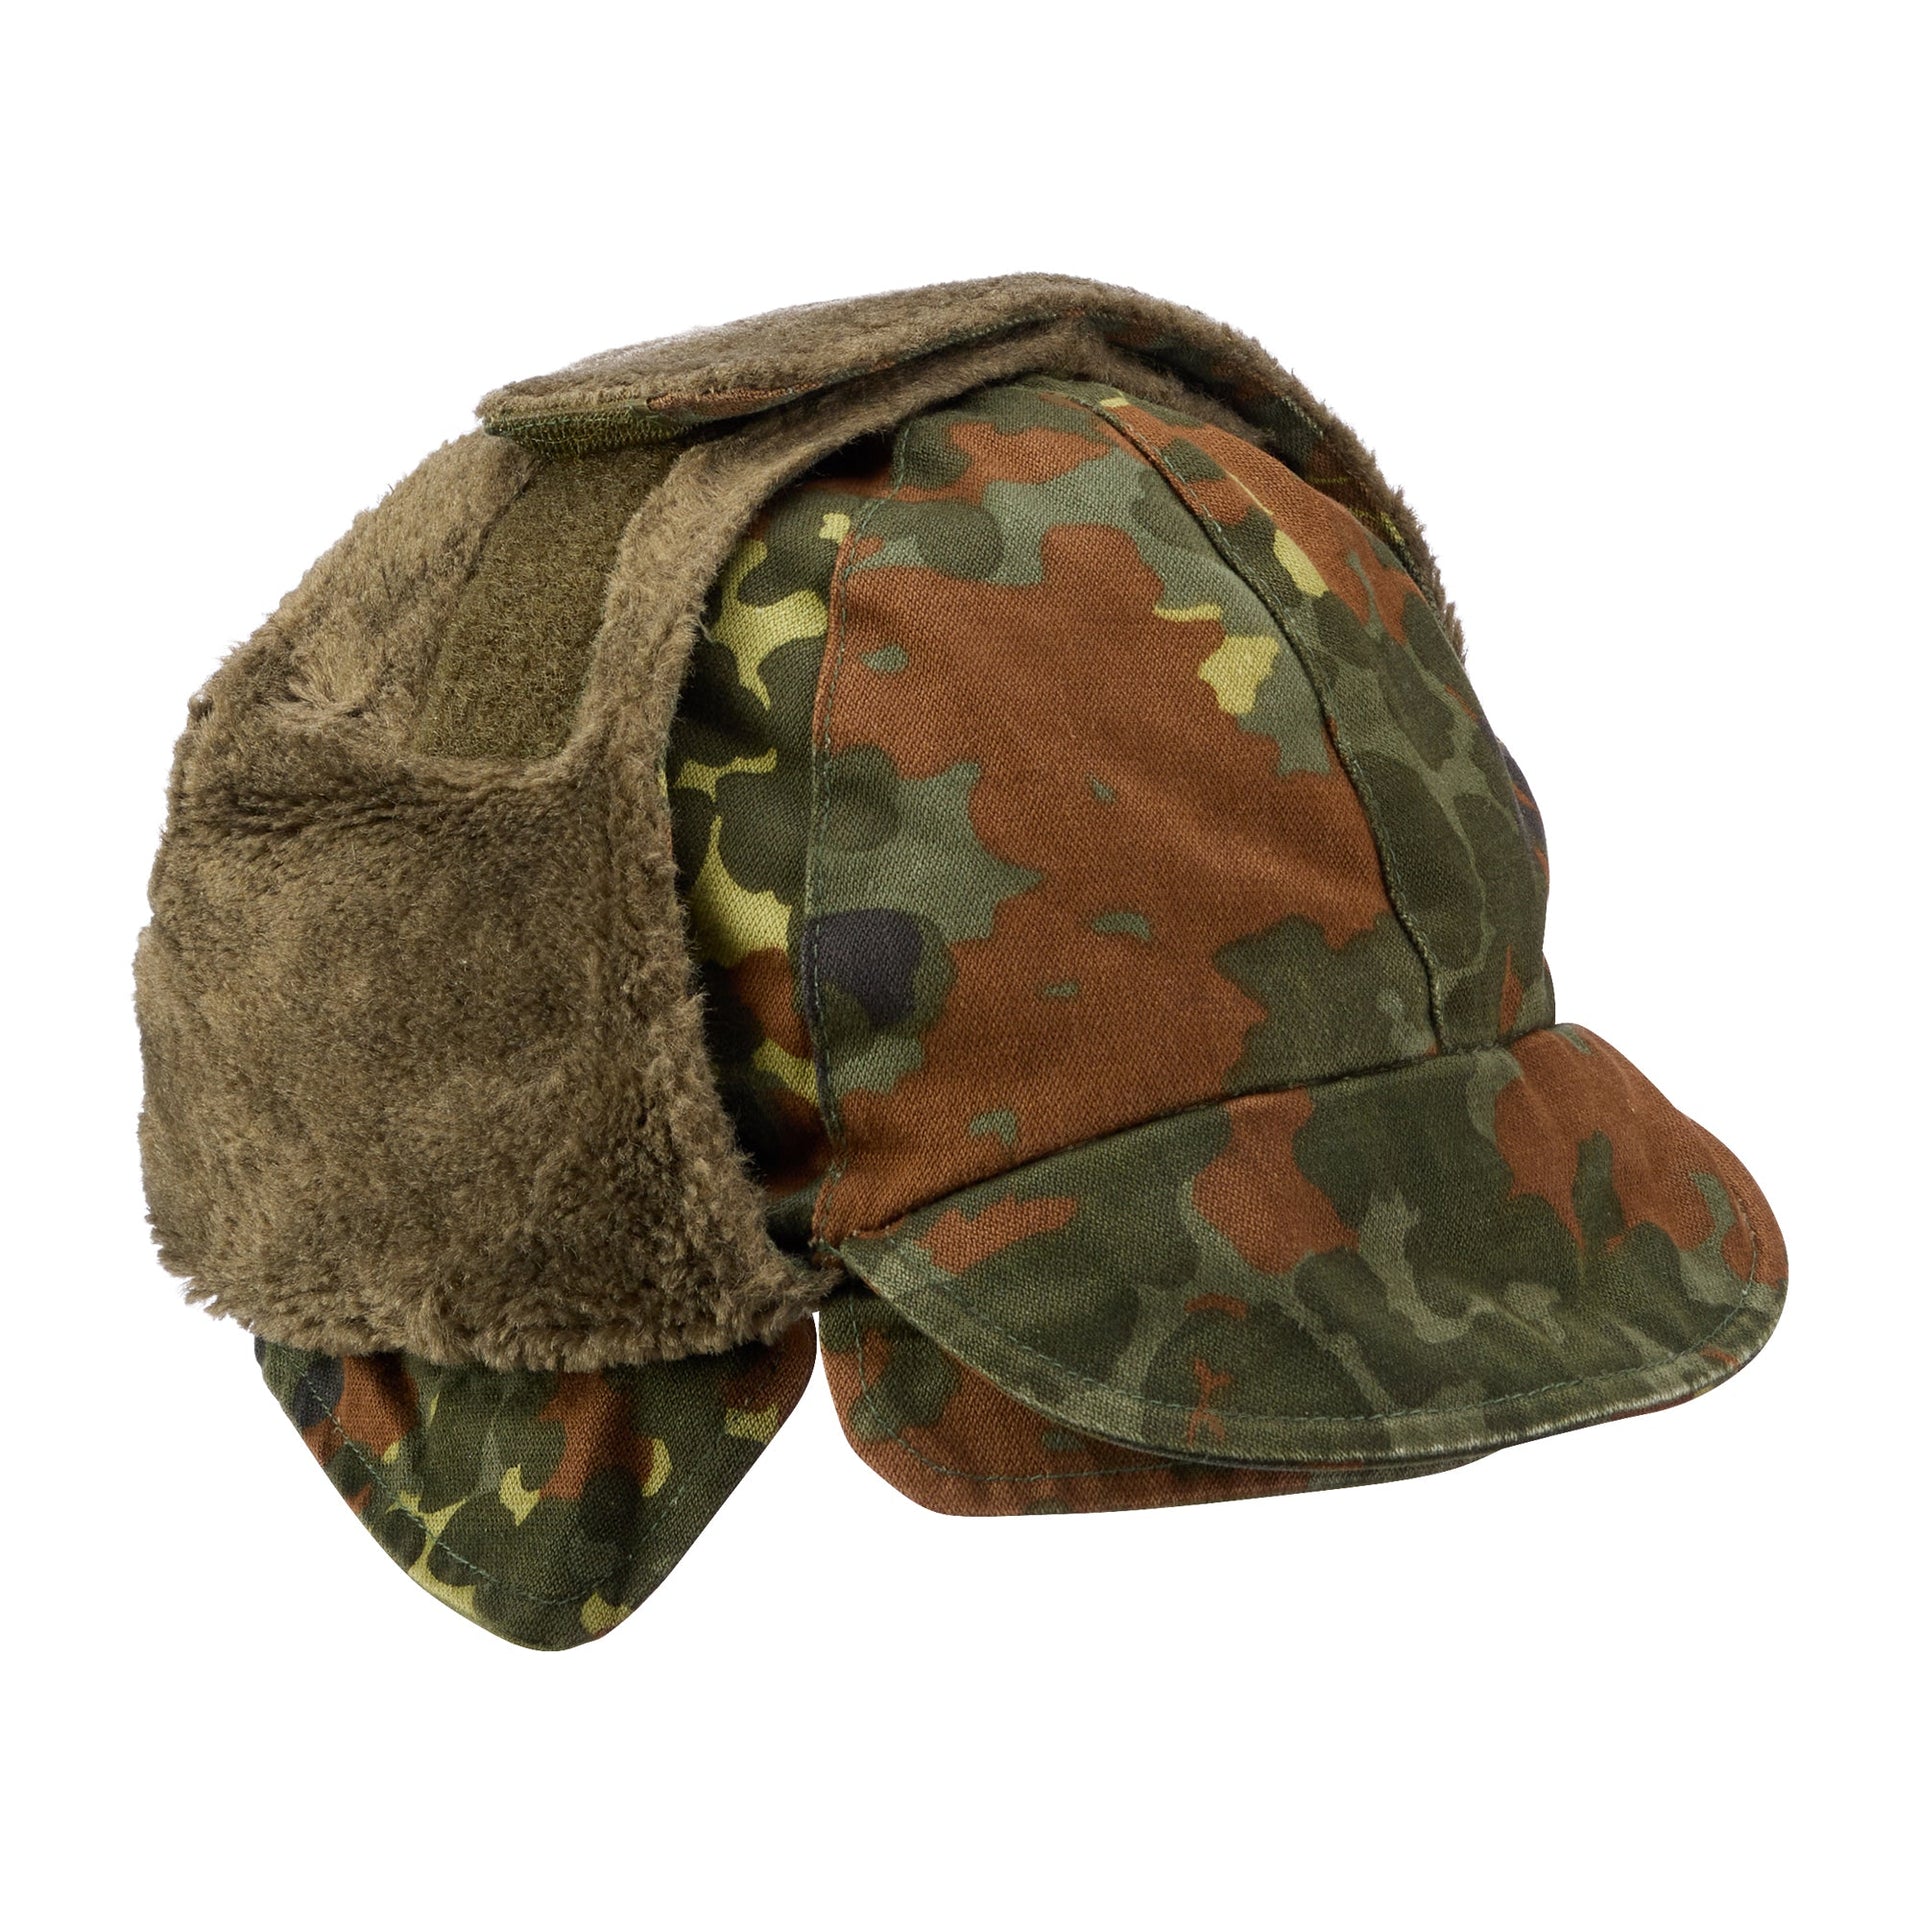 German Army Winter Pile Cap  used